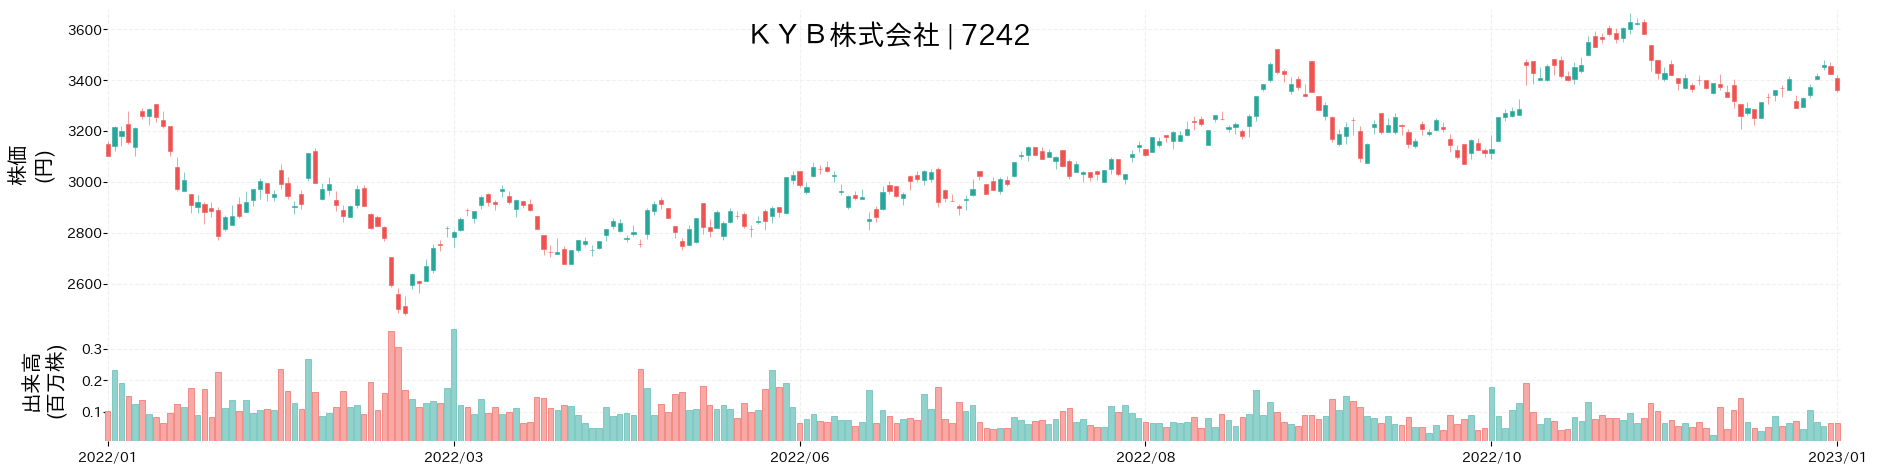 KYBの株価推移(2022)